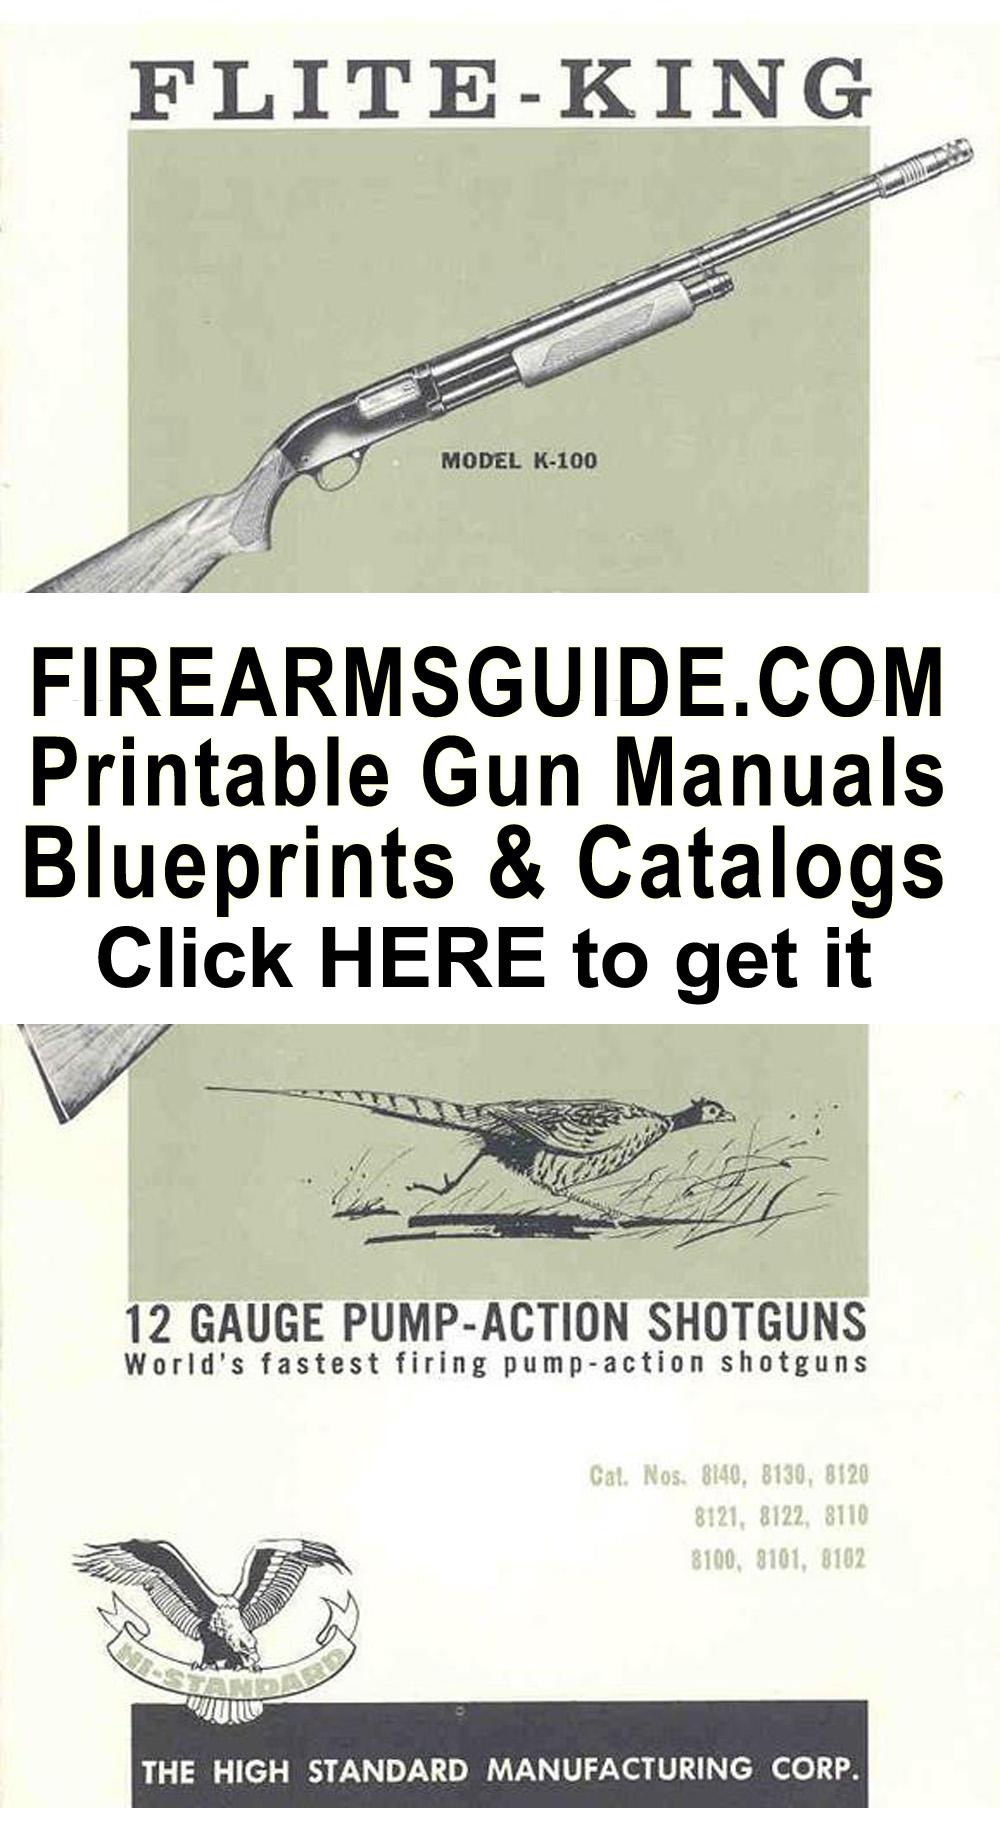 Hy Hunter's American Weapons Corp 1957 Machine Gun Catalog 